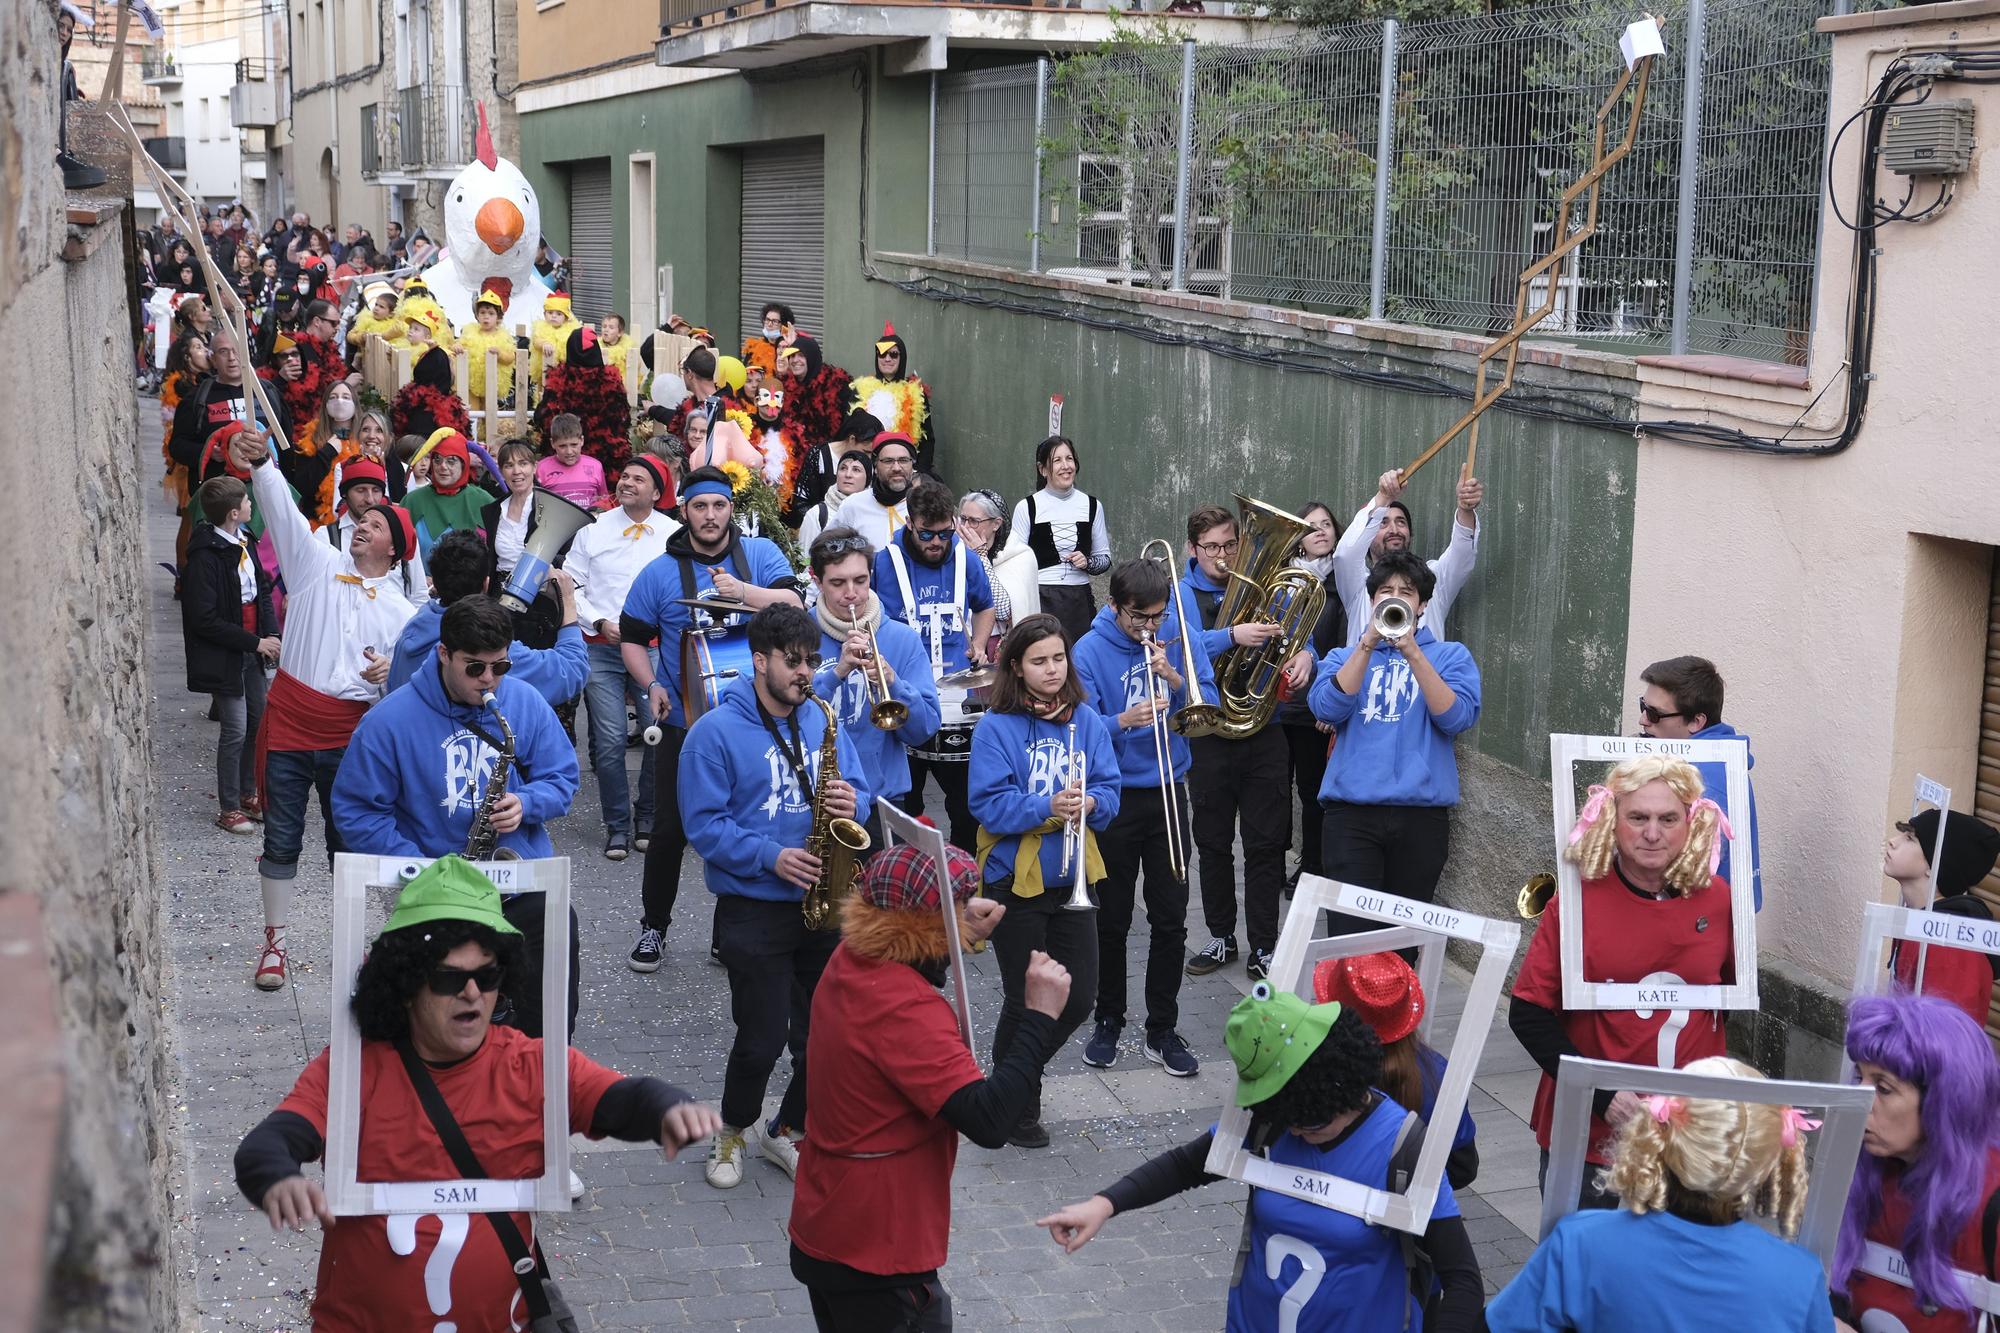 Busca't a les fotos del Carnaval d'Avinyó 2022